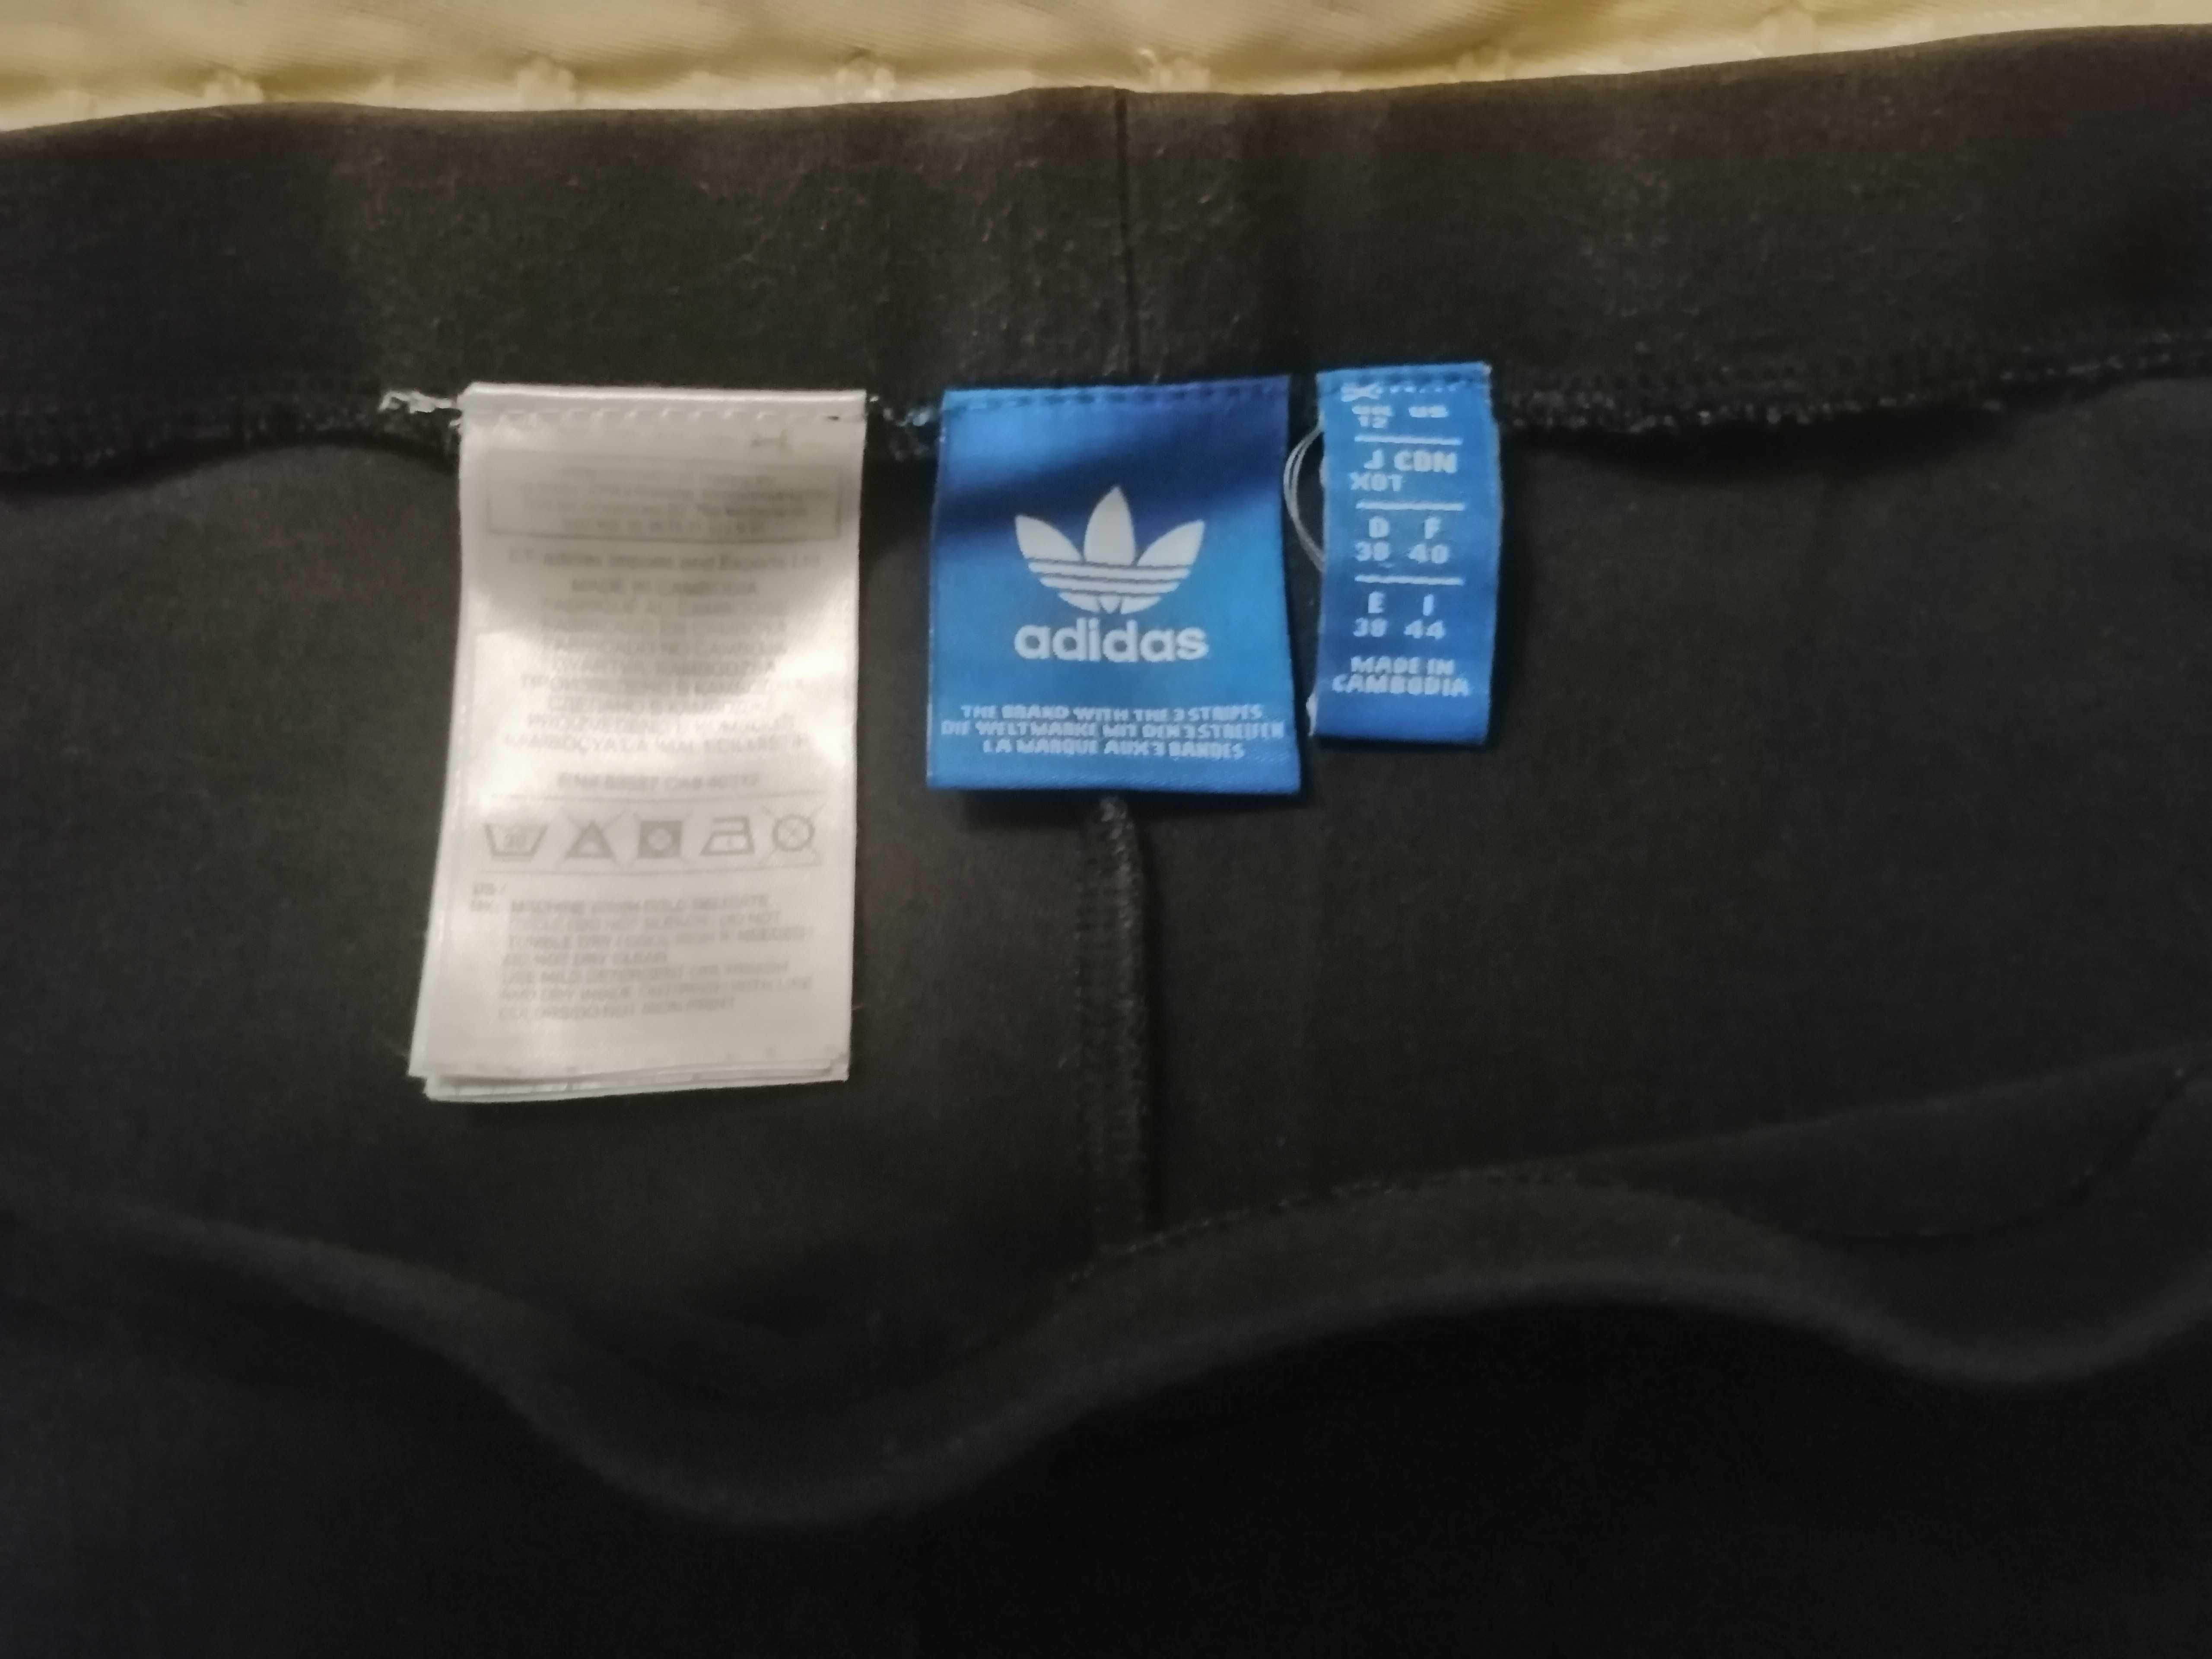 Adidas leginsy damskie S/M kolor czarny bawełna original